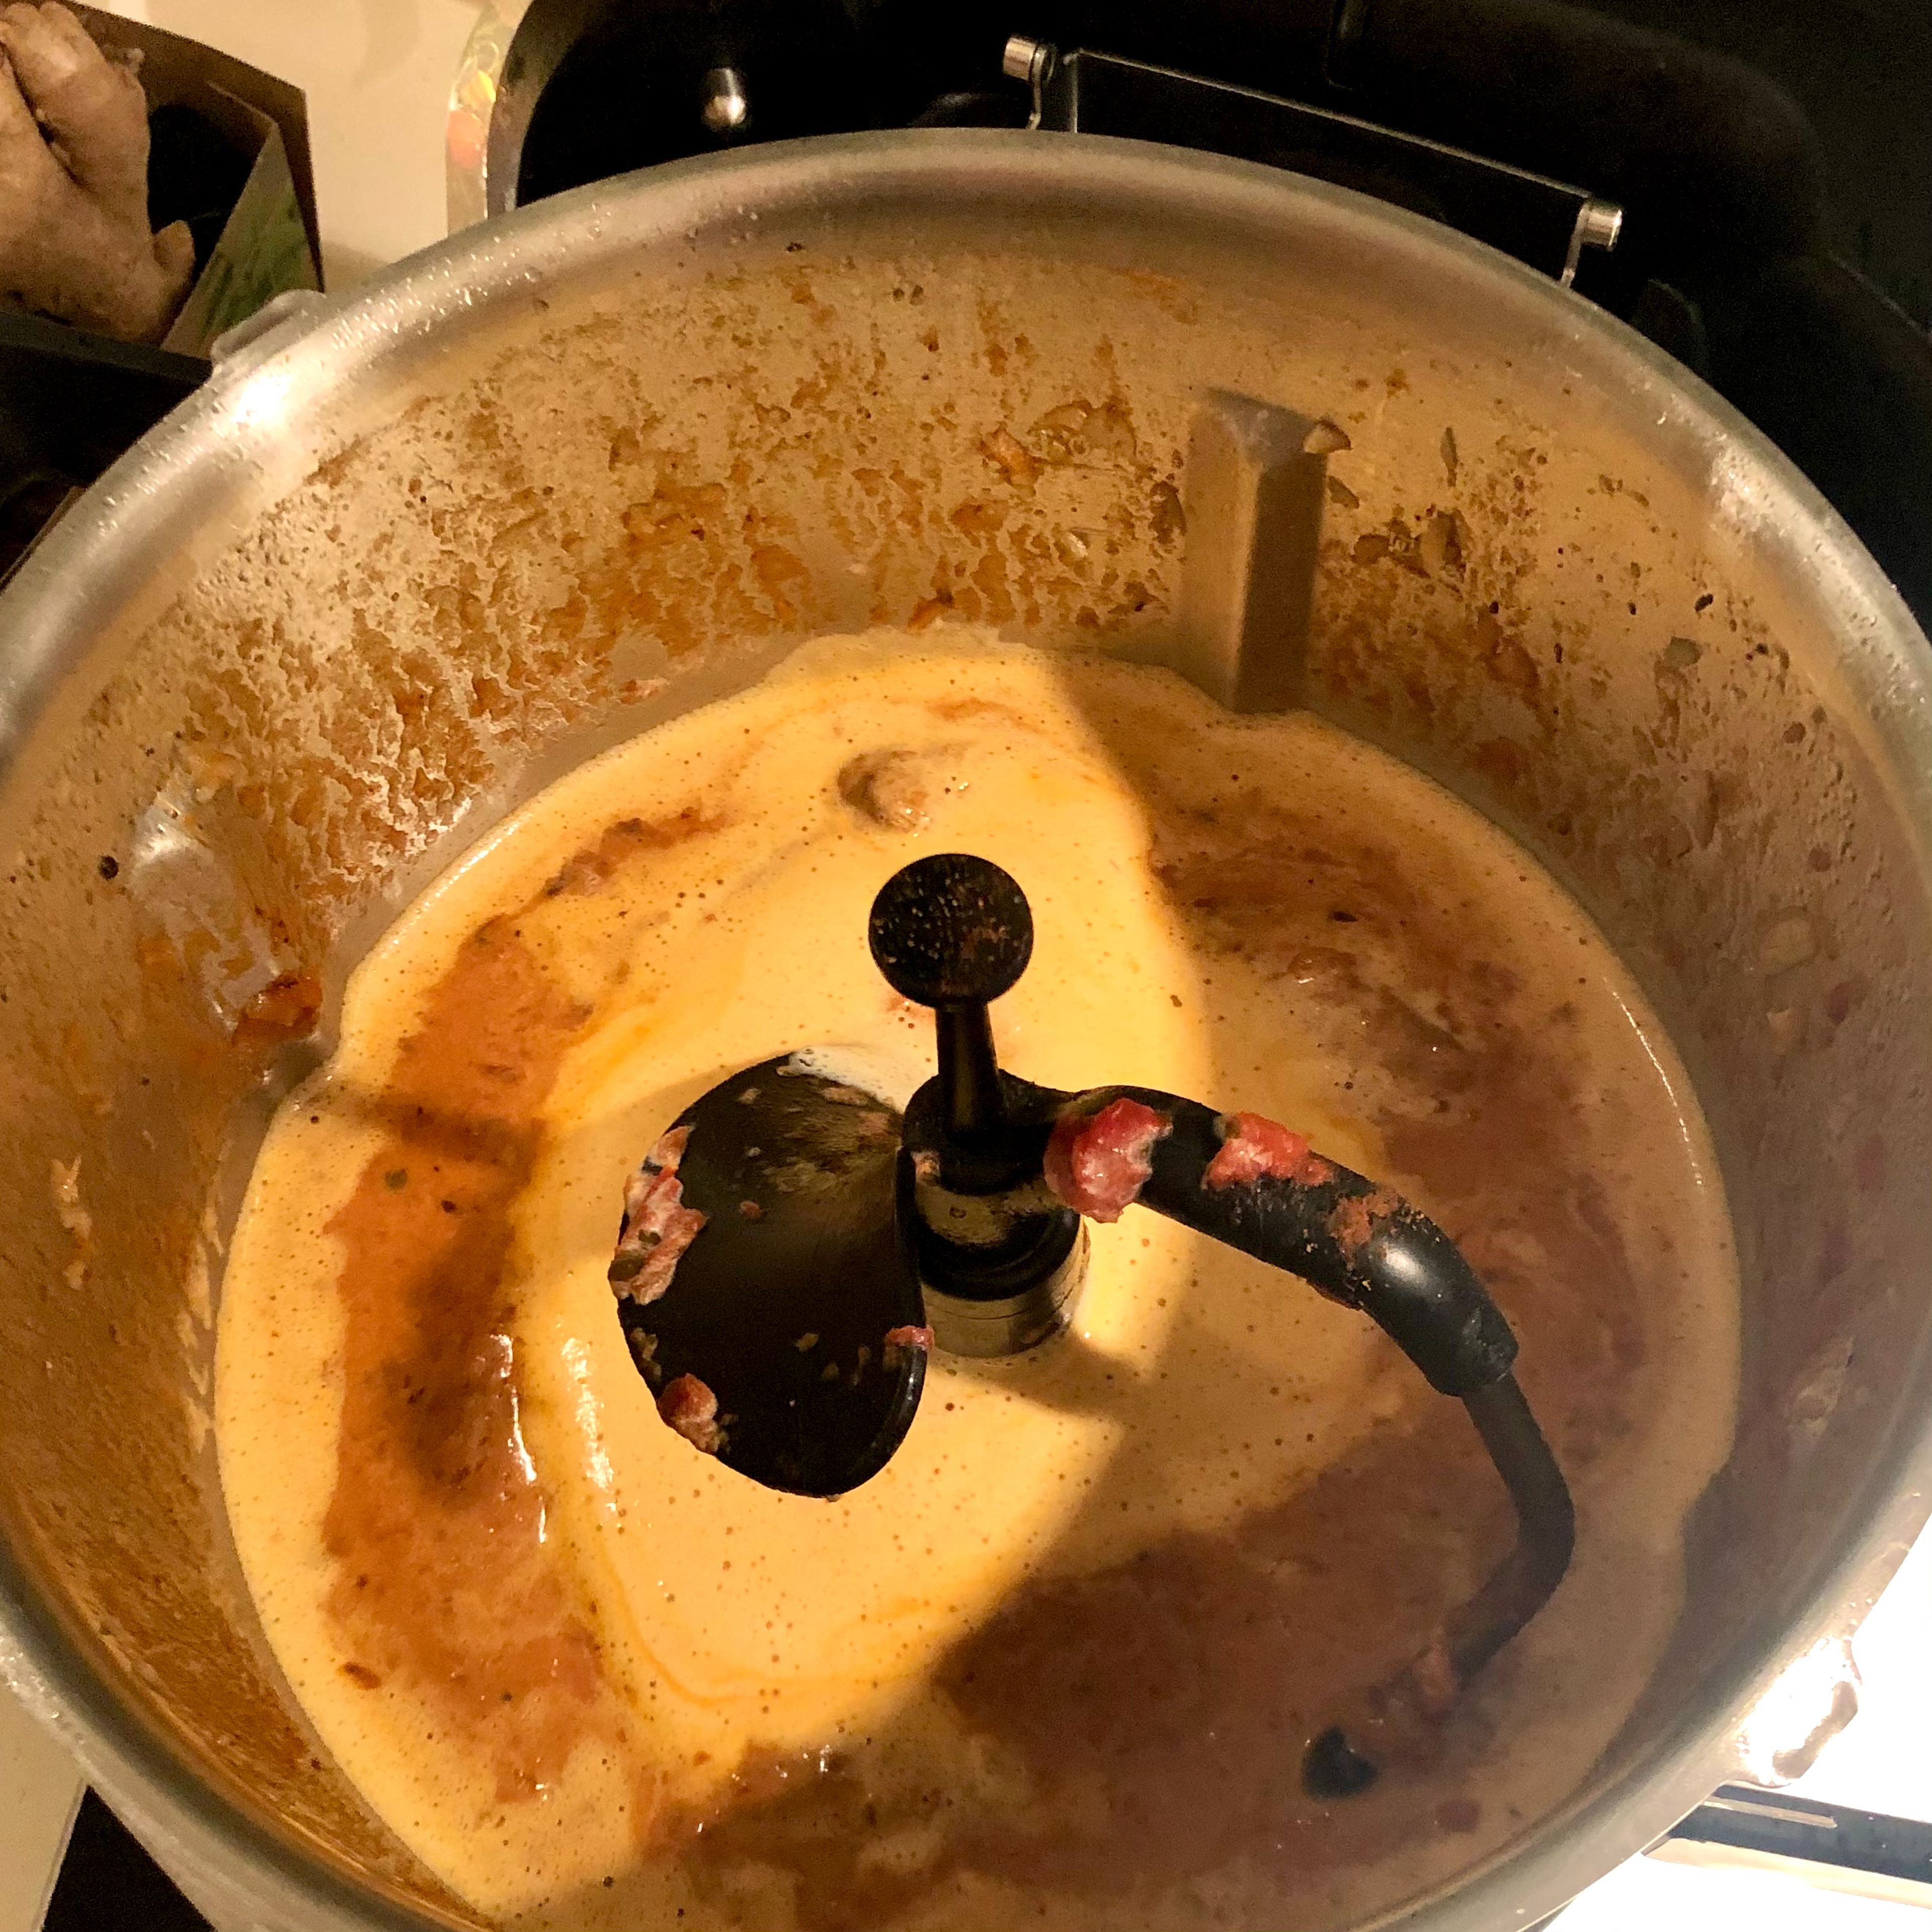 Sahne mit Mehl verquirlen. Cookit pausieren, öffnen und Sauce mit Salz, Pfeffer und zusätzlicher Schärfe nach Gusto würzen. Sahne-Mehl-Mischung zugeben, Deckel ohne Messbecher schließen und kurz aufkochen (3D-Rührer | Stufe 3 | 95°C | 1 Min.). Cookit öffnen, Fleischsaft mit Sauce vermengen, dann Schweinebäckchen einlegen und aufwärmen (3D-Rührer | Stufe 1 | 70°C | 5 Min.). Guten Appetit!